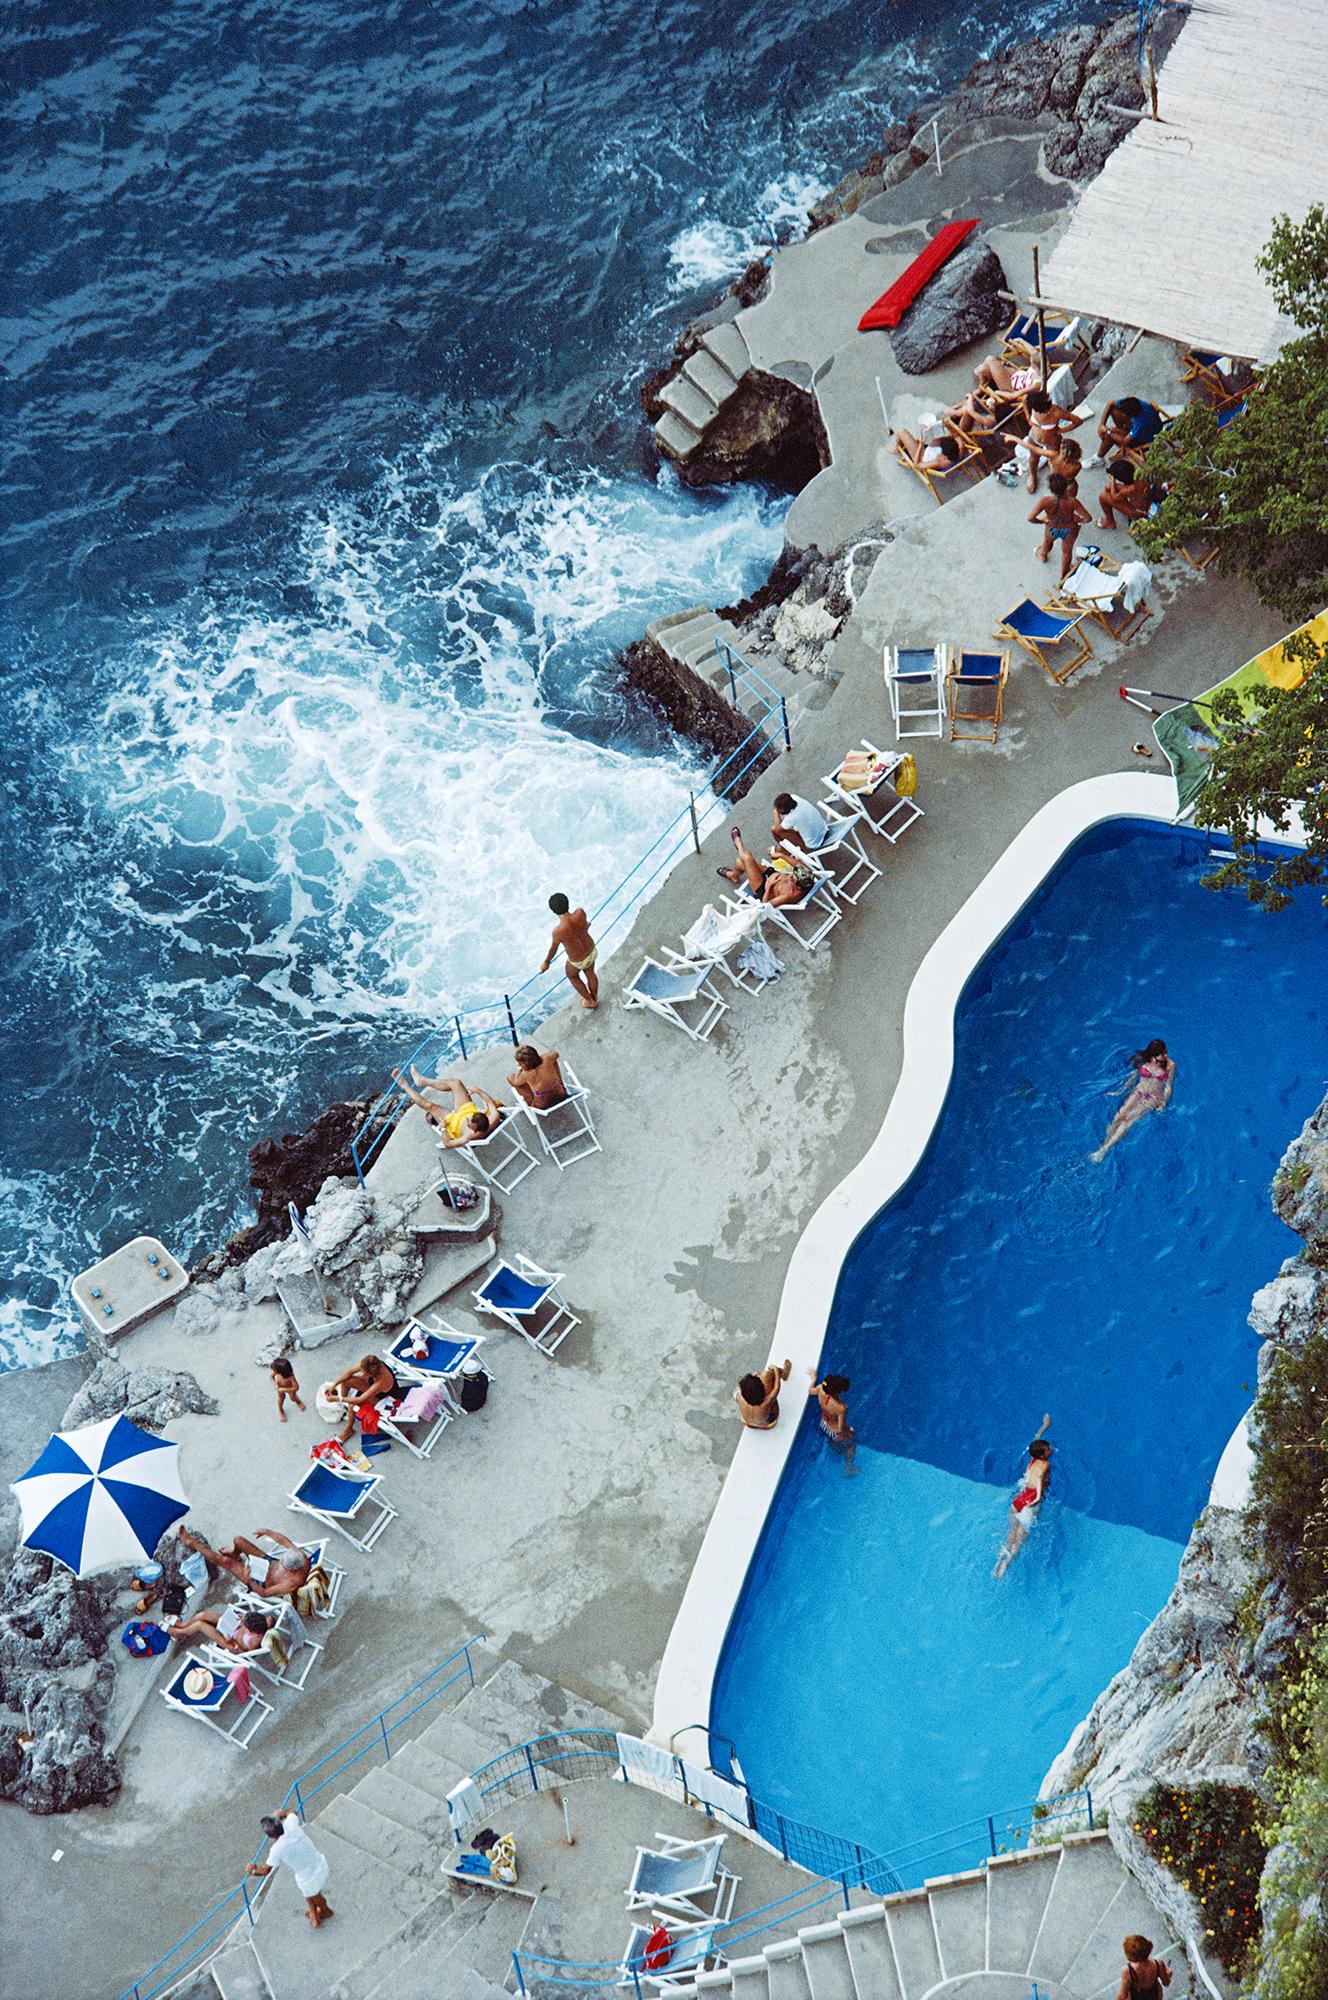 Pool an der Amalfiküste, Nachlass-Ausgabe